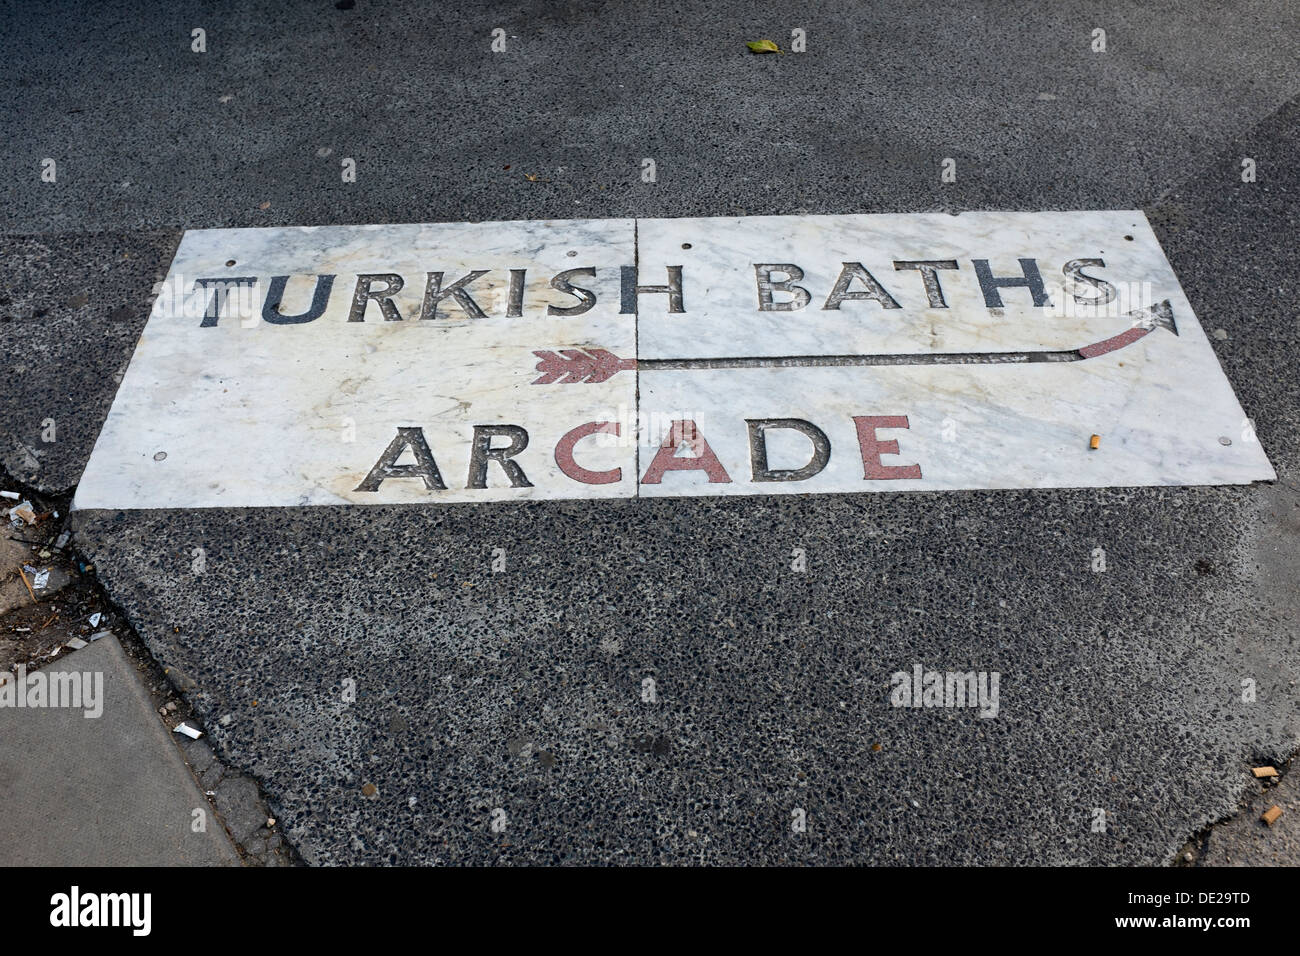 Türkische Bäder Arcade Steet Plasterung Zeichen Southampton Row London Stockfoto